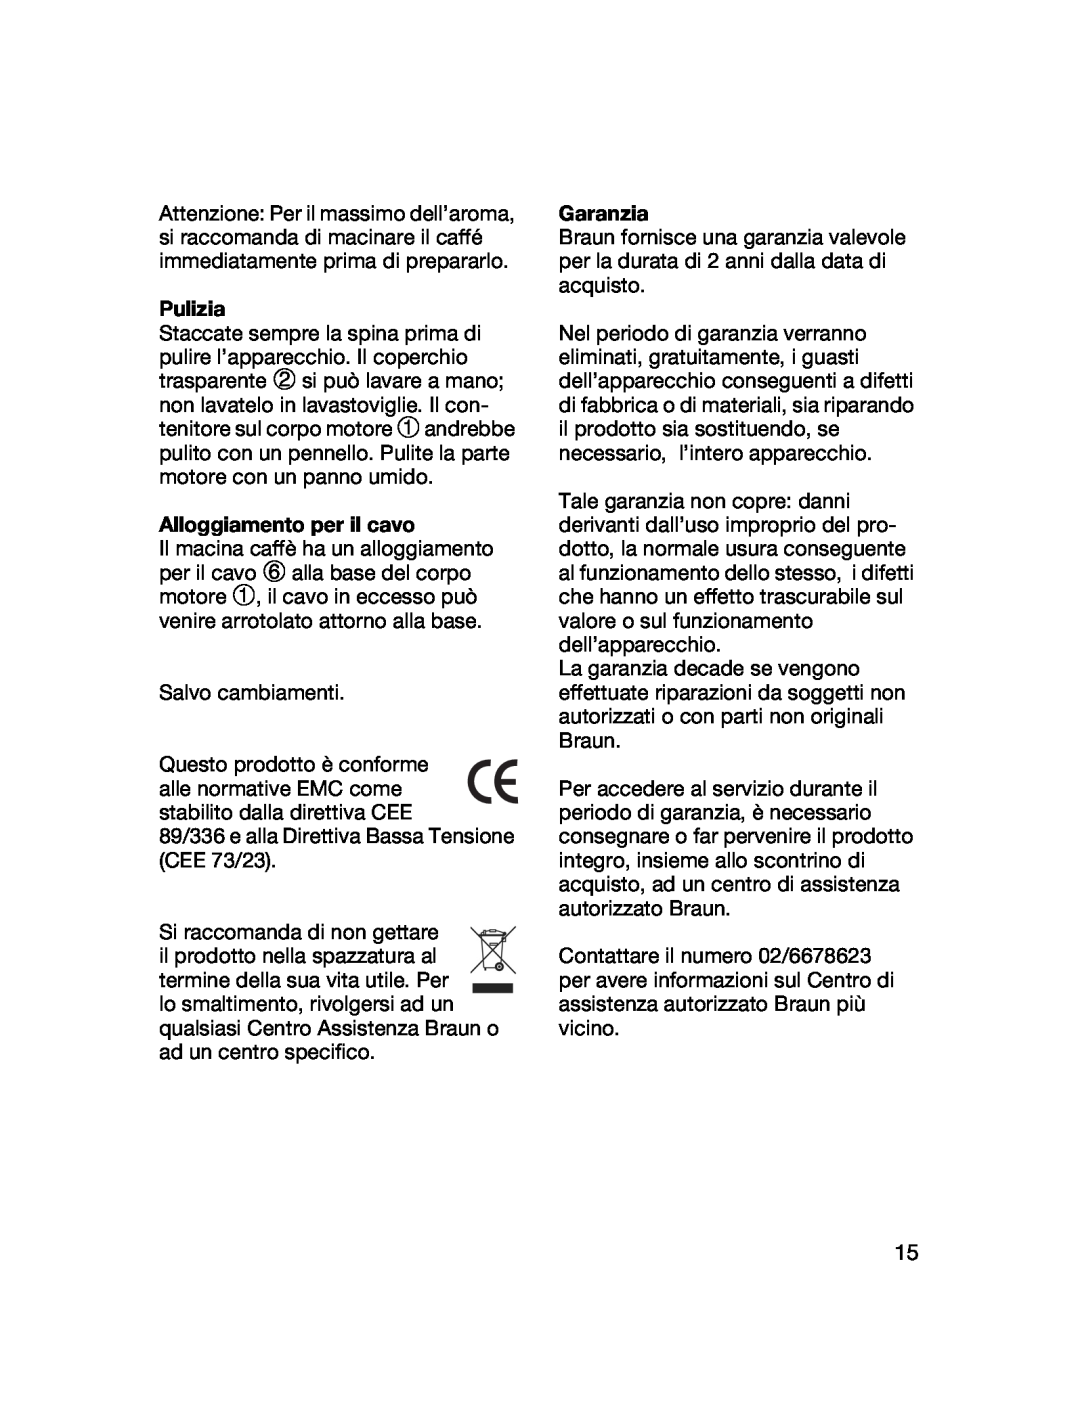 Braun 4041 manual Pulizia, Alloggiamento per il cavo, Garanzia 